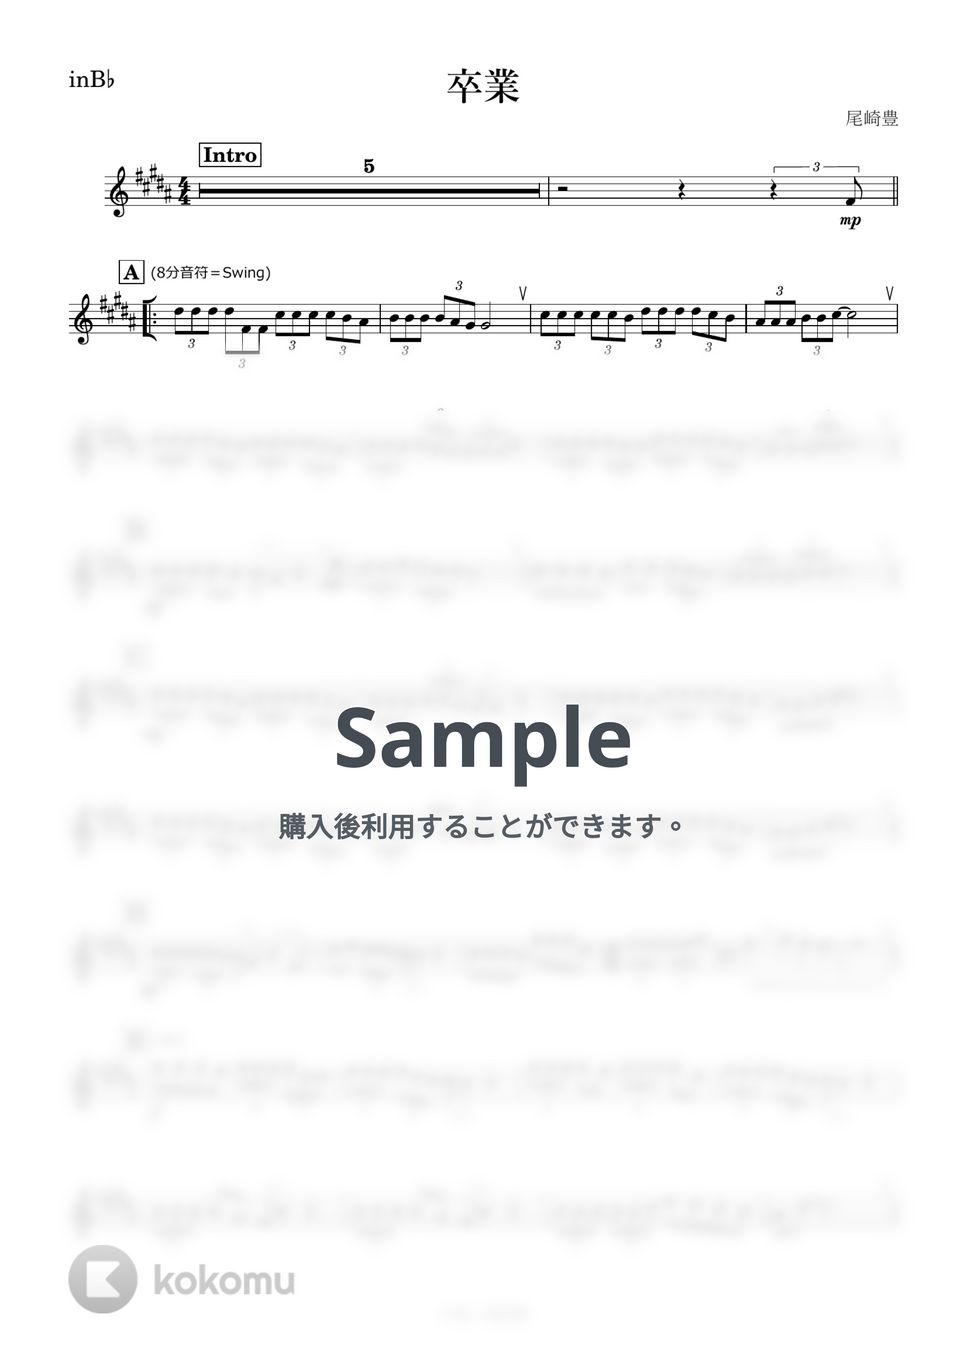 尾崎豊 - 卒業 (B♭) by kanamusic